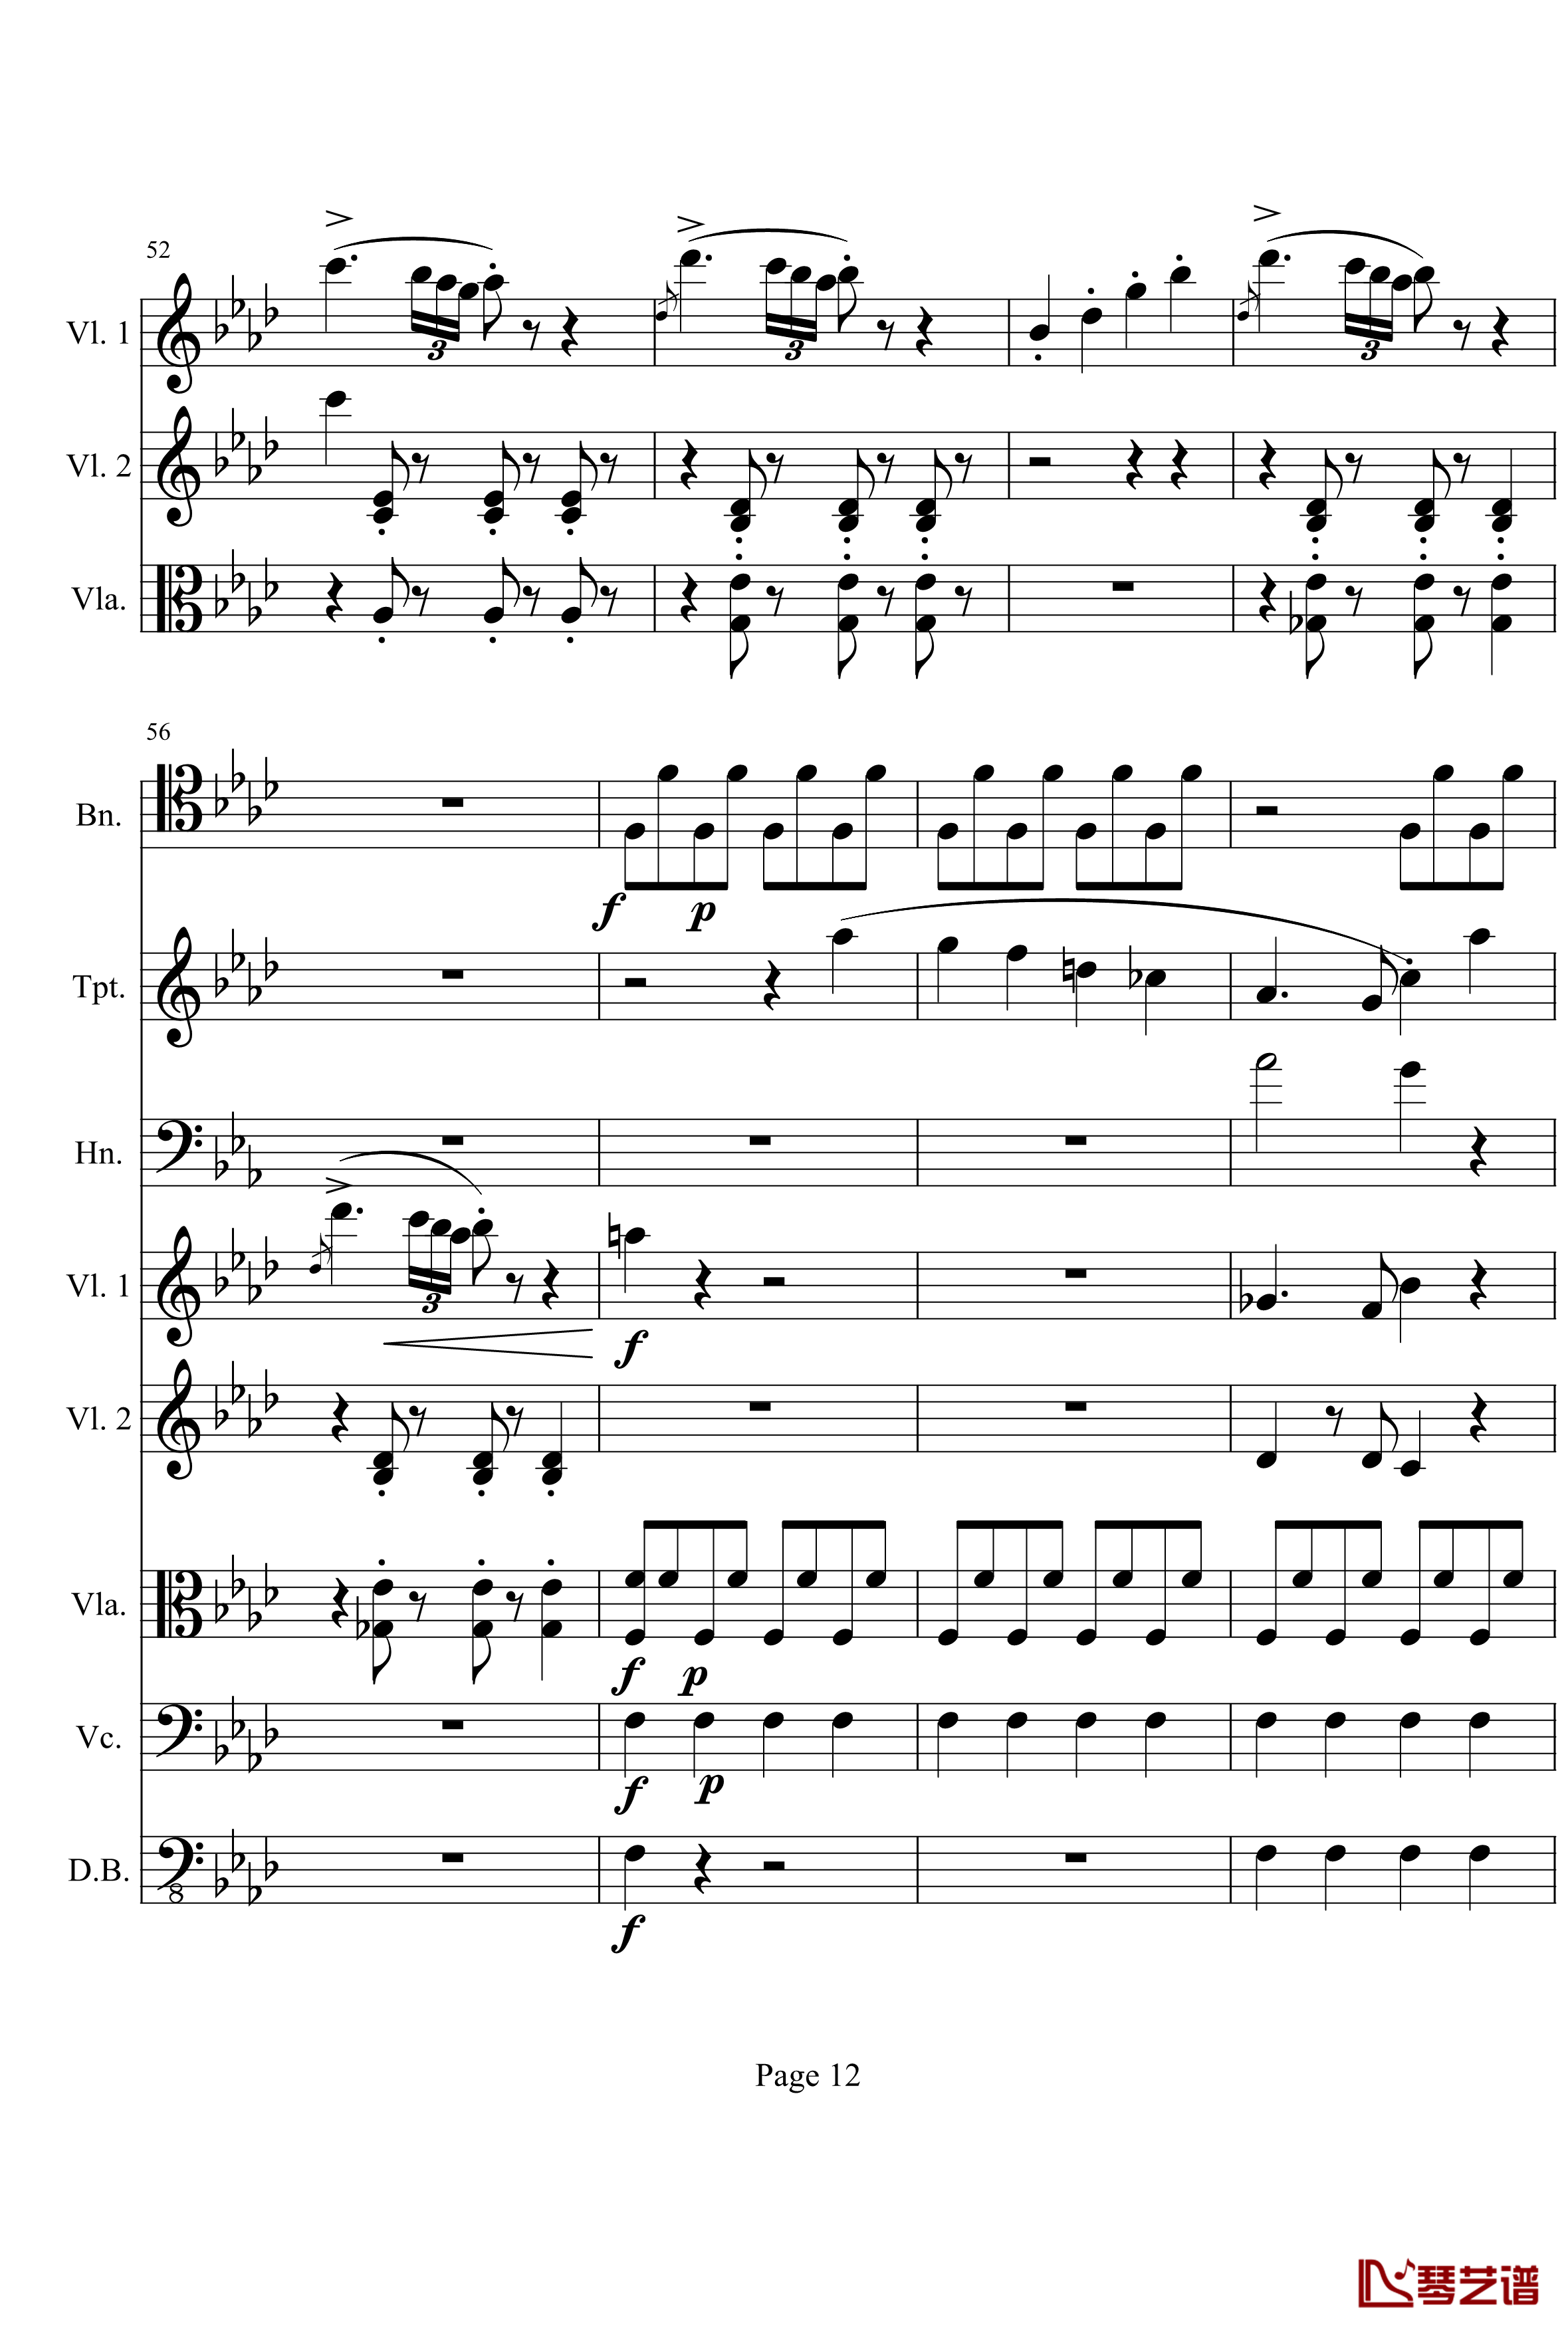 奏鸣曲之交响钢琴谱-第1首-Ⅰ-贝多芬-beethoven12